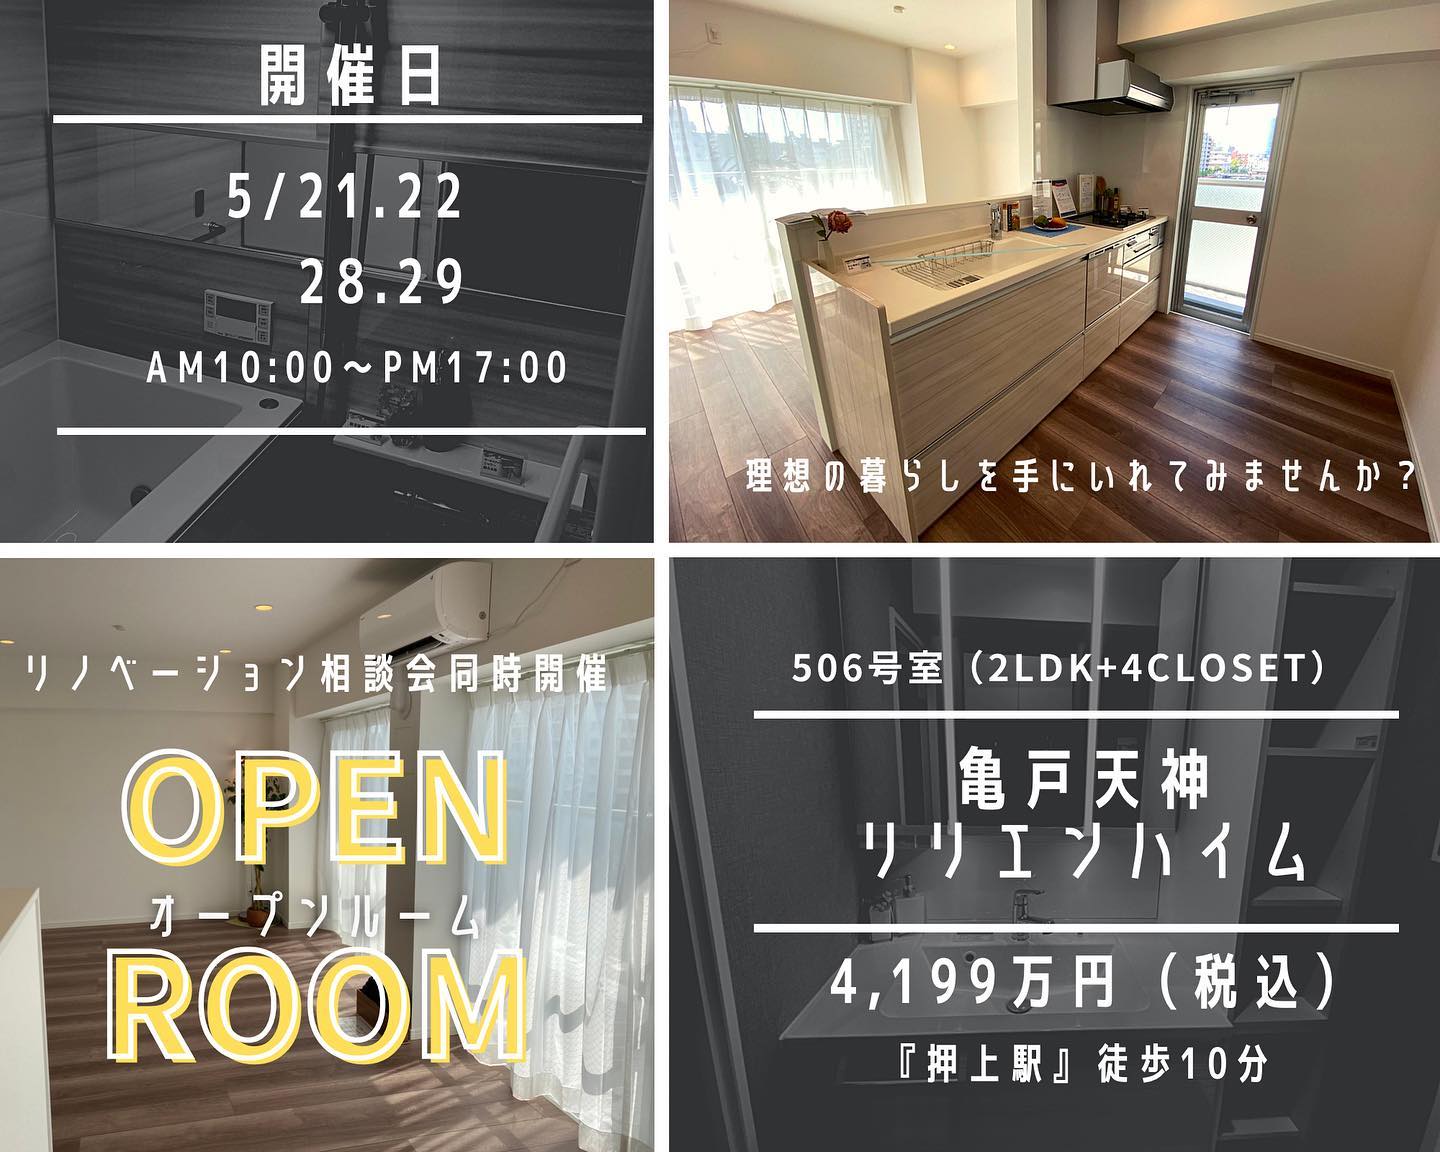 5月28日(土)29日オープンルーム開催!!＠江東区